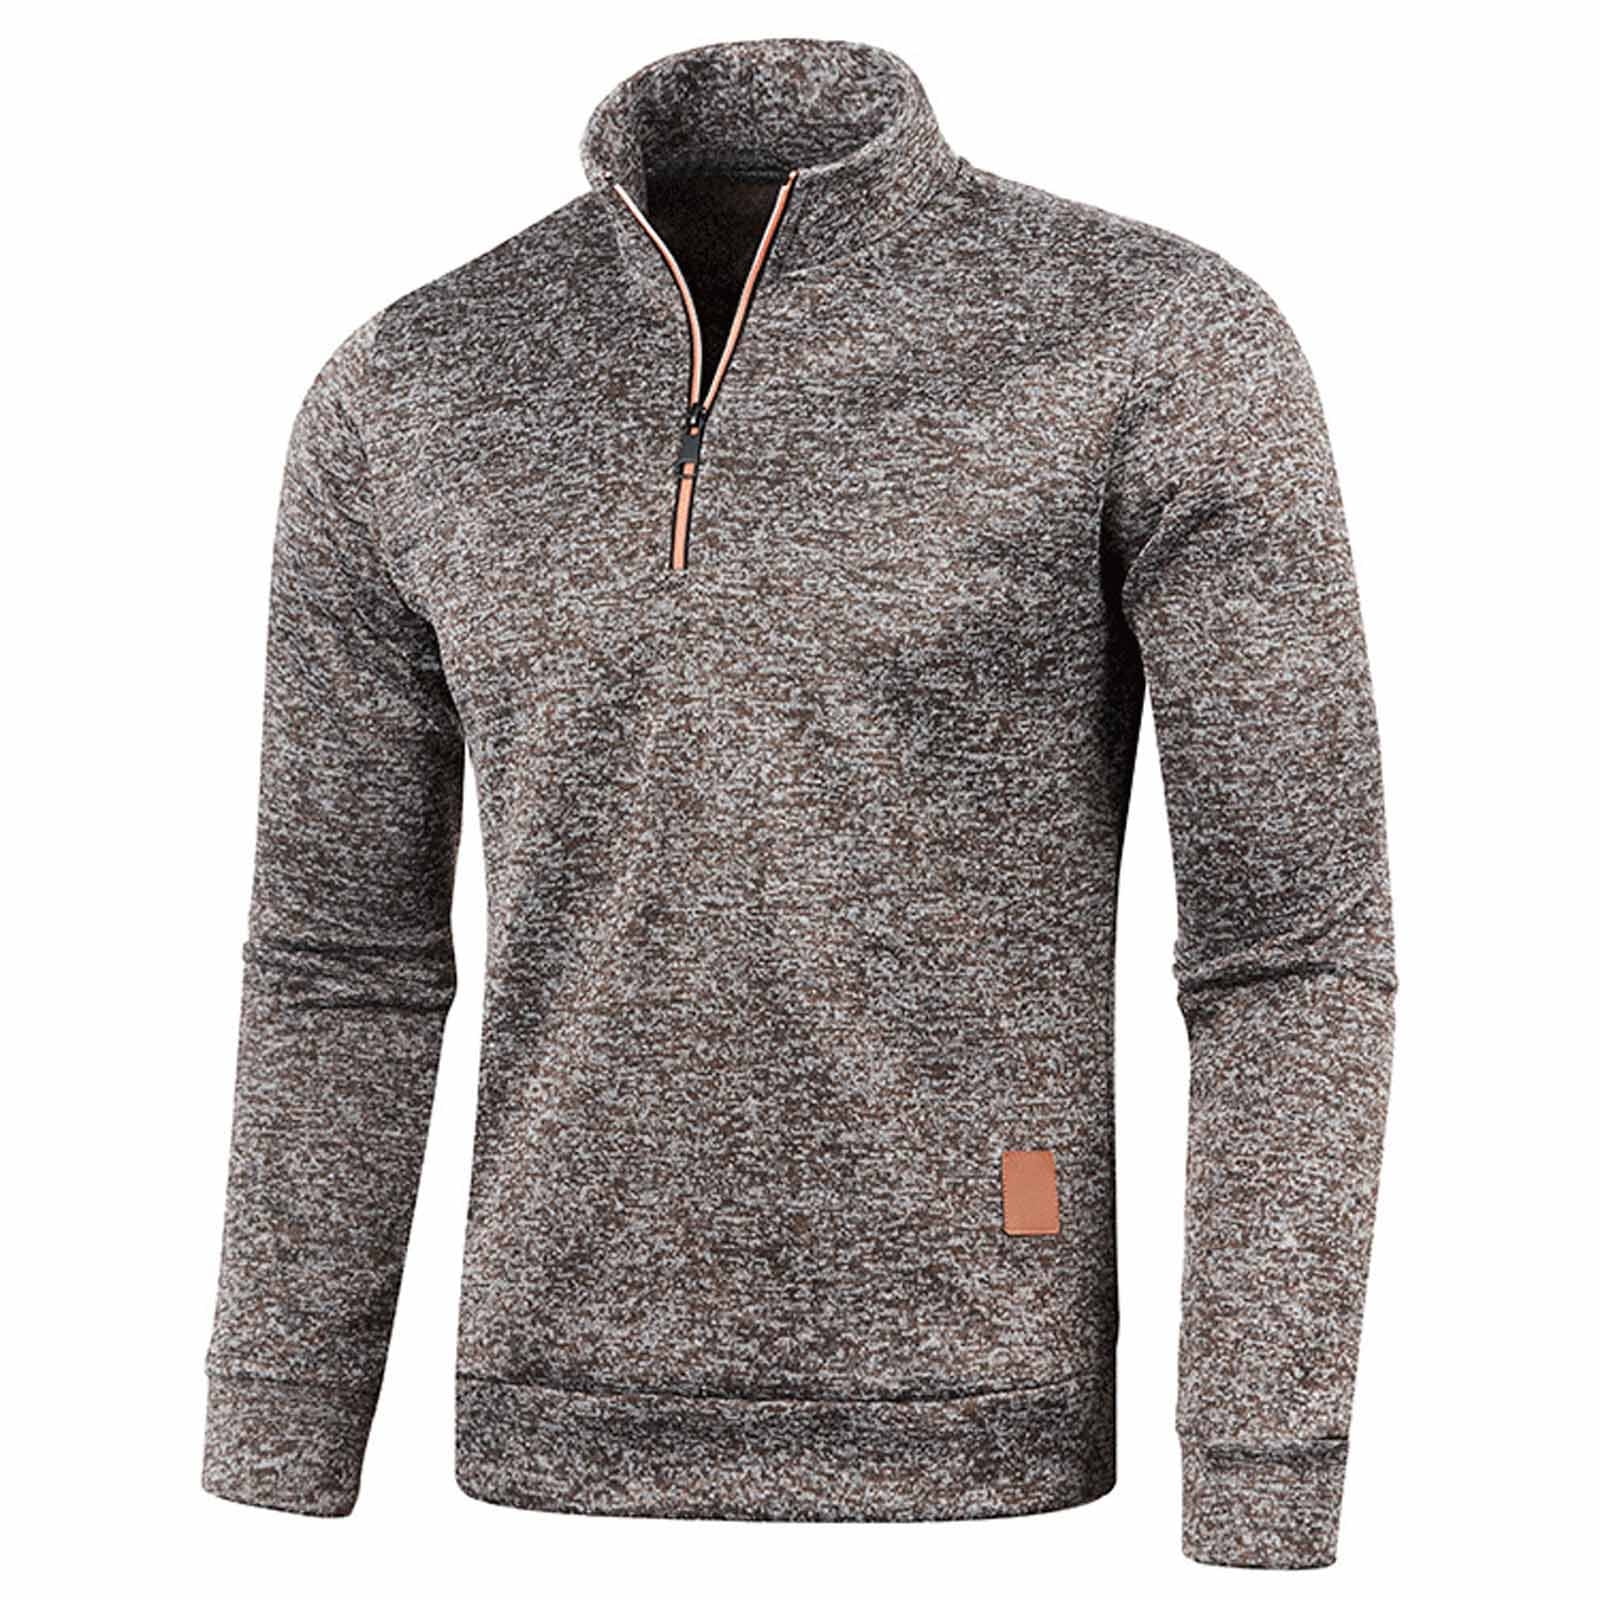 Men's Long Sleeve Fleece Quarter-Zip Premium Fleece Lined Long Sleeve ...